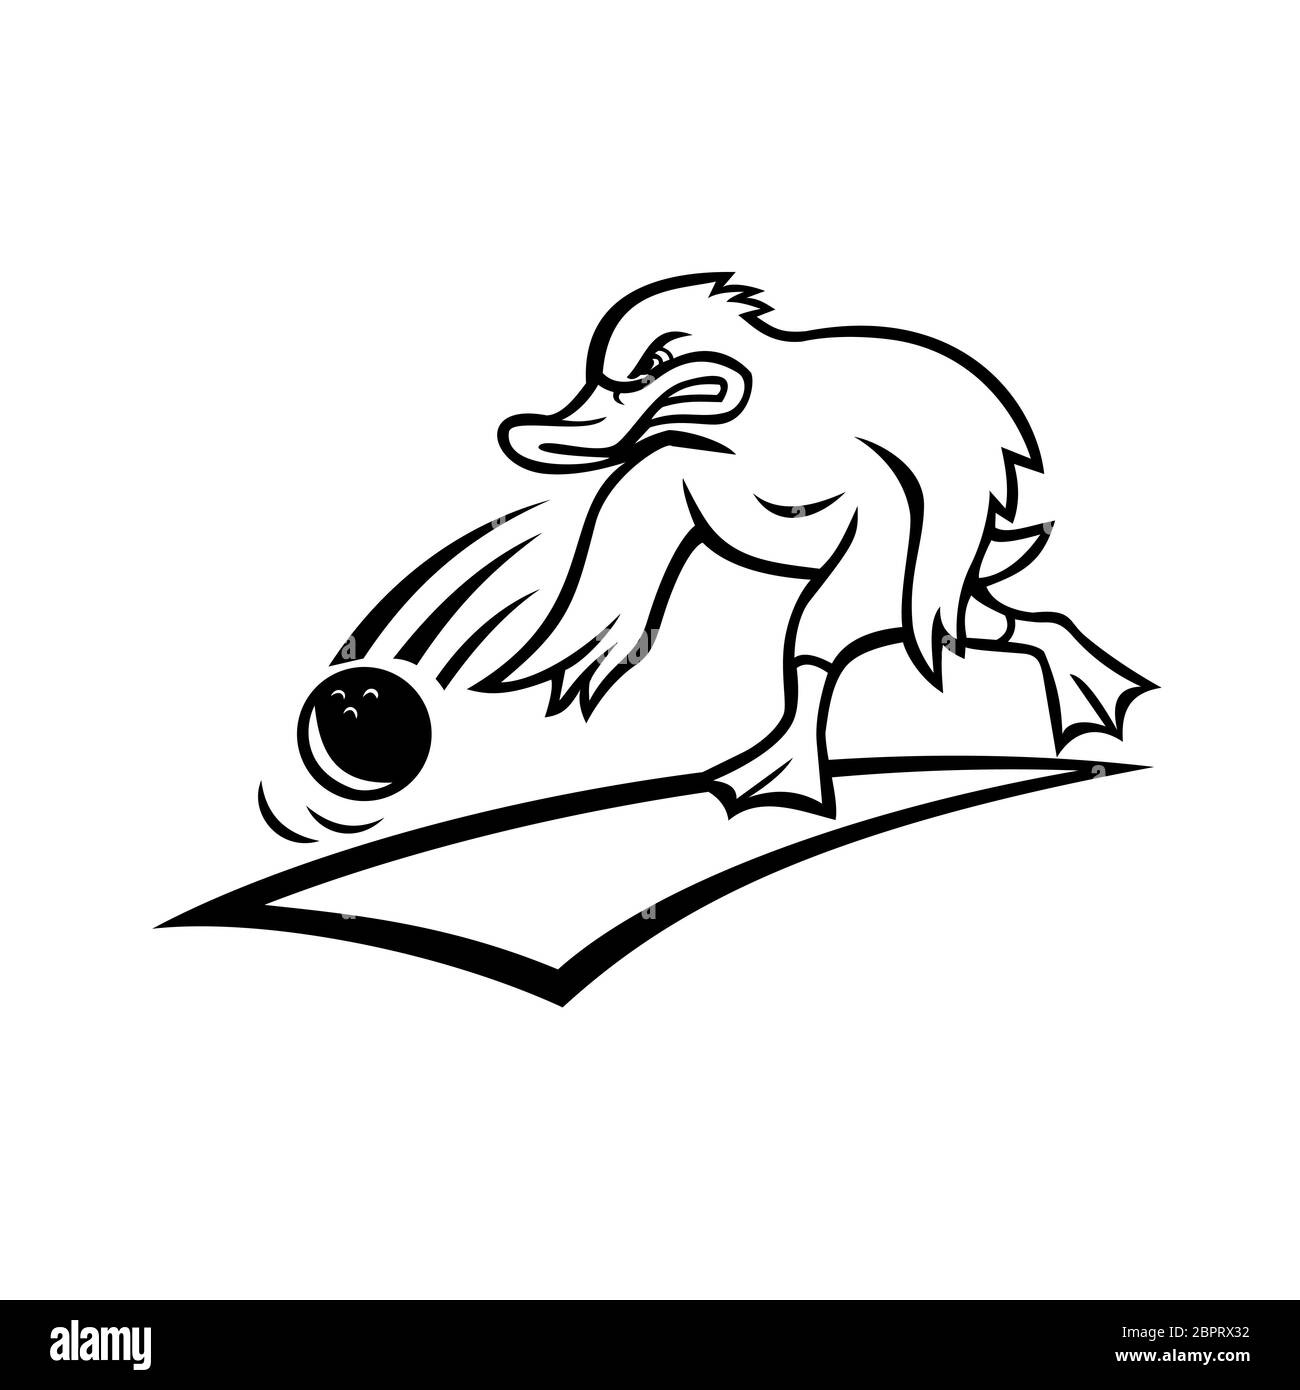 Mascotte Cartoon style illustrazione di un bowler arrabbiati o anatra germano reale facendo rotolare una palla da bowling giù un legno o corsia sintetica visto dal lato su isolato Foto Stock